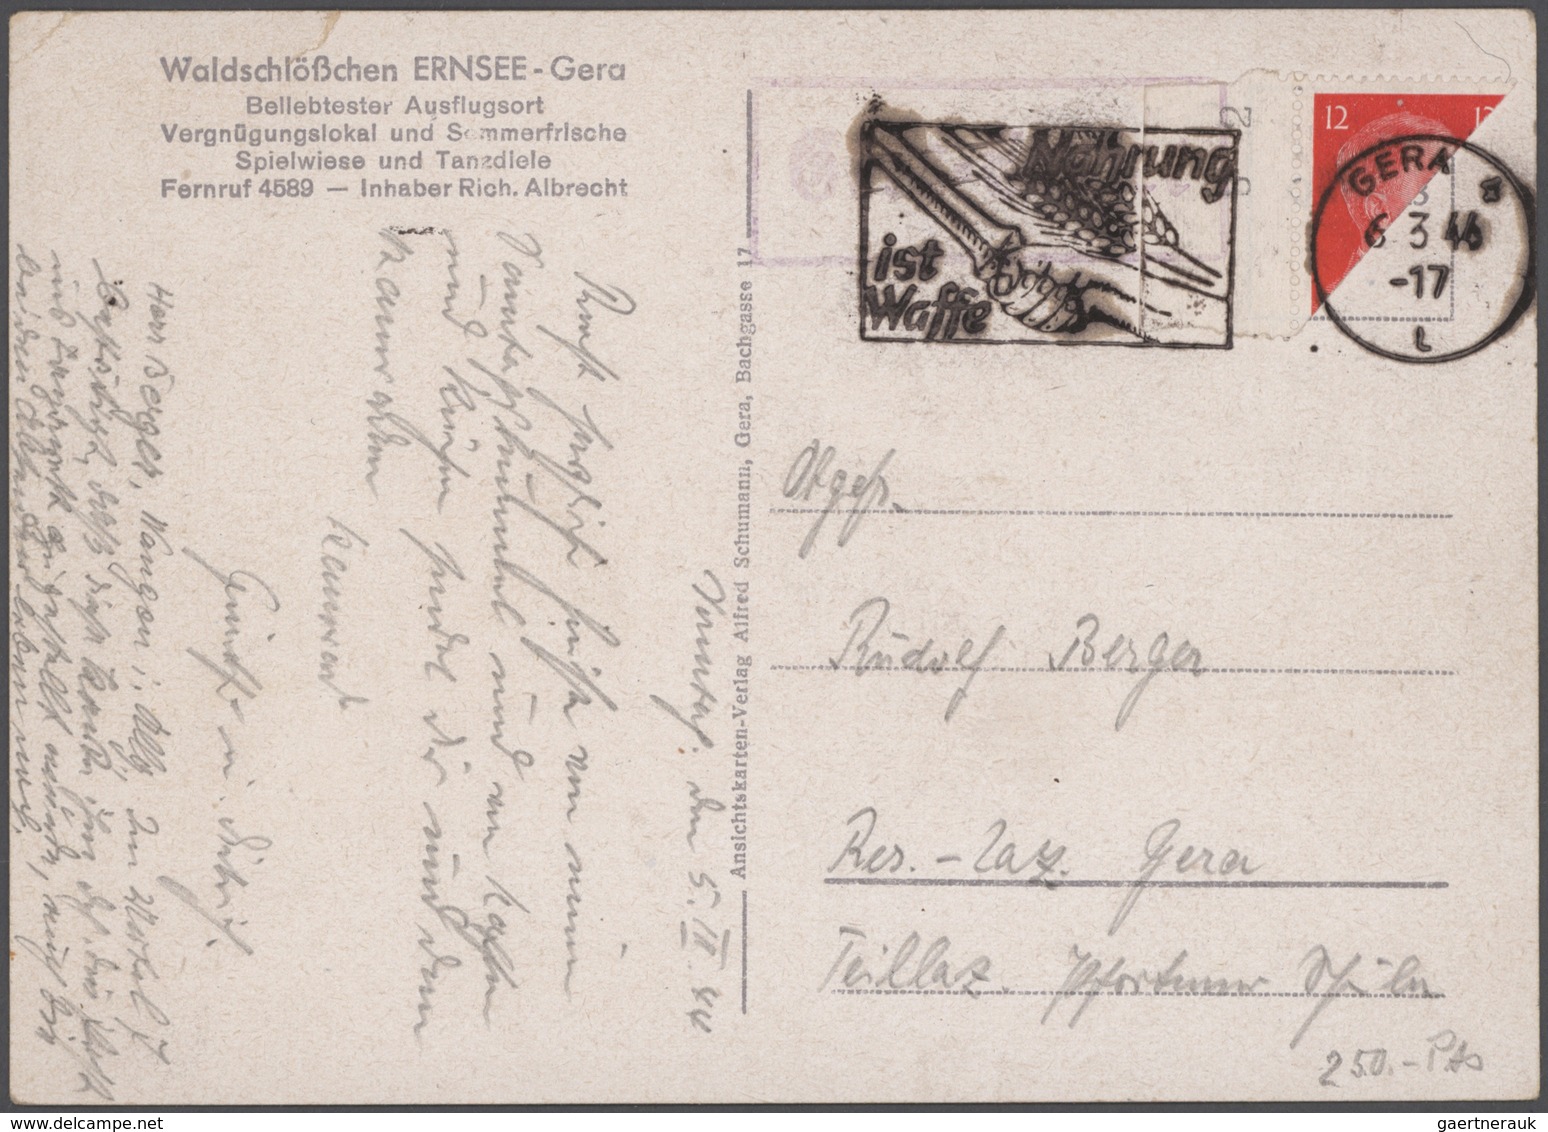 Deutsches Reich: 1872-1944, toller Bestand mit über 500 Briefen, Karten, Ganzsachen und Belegen, dab